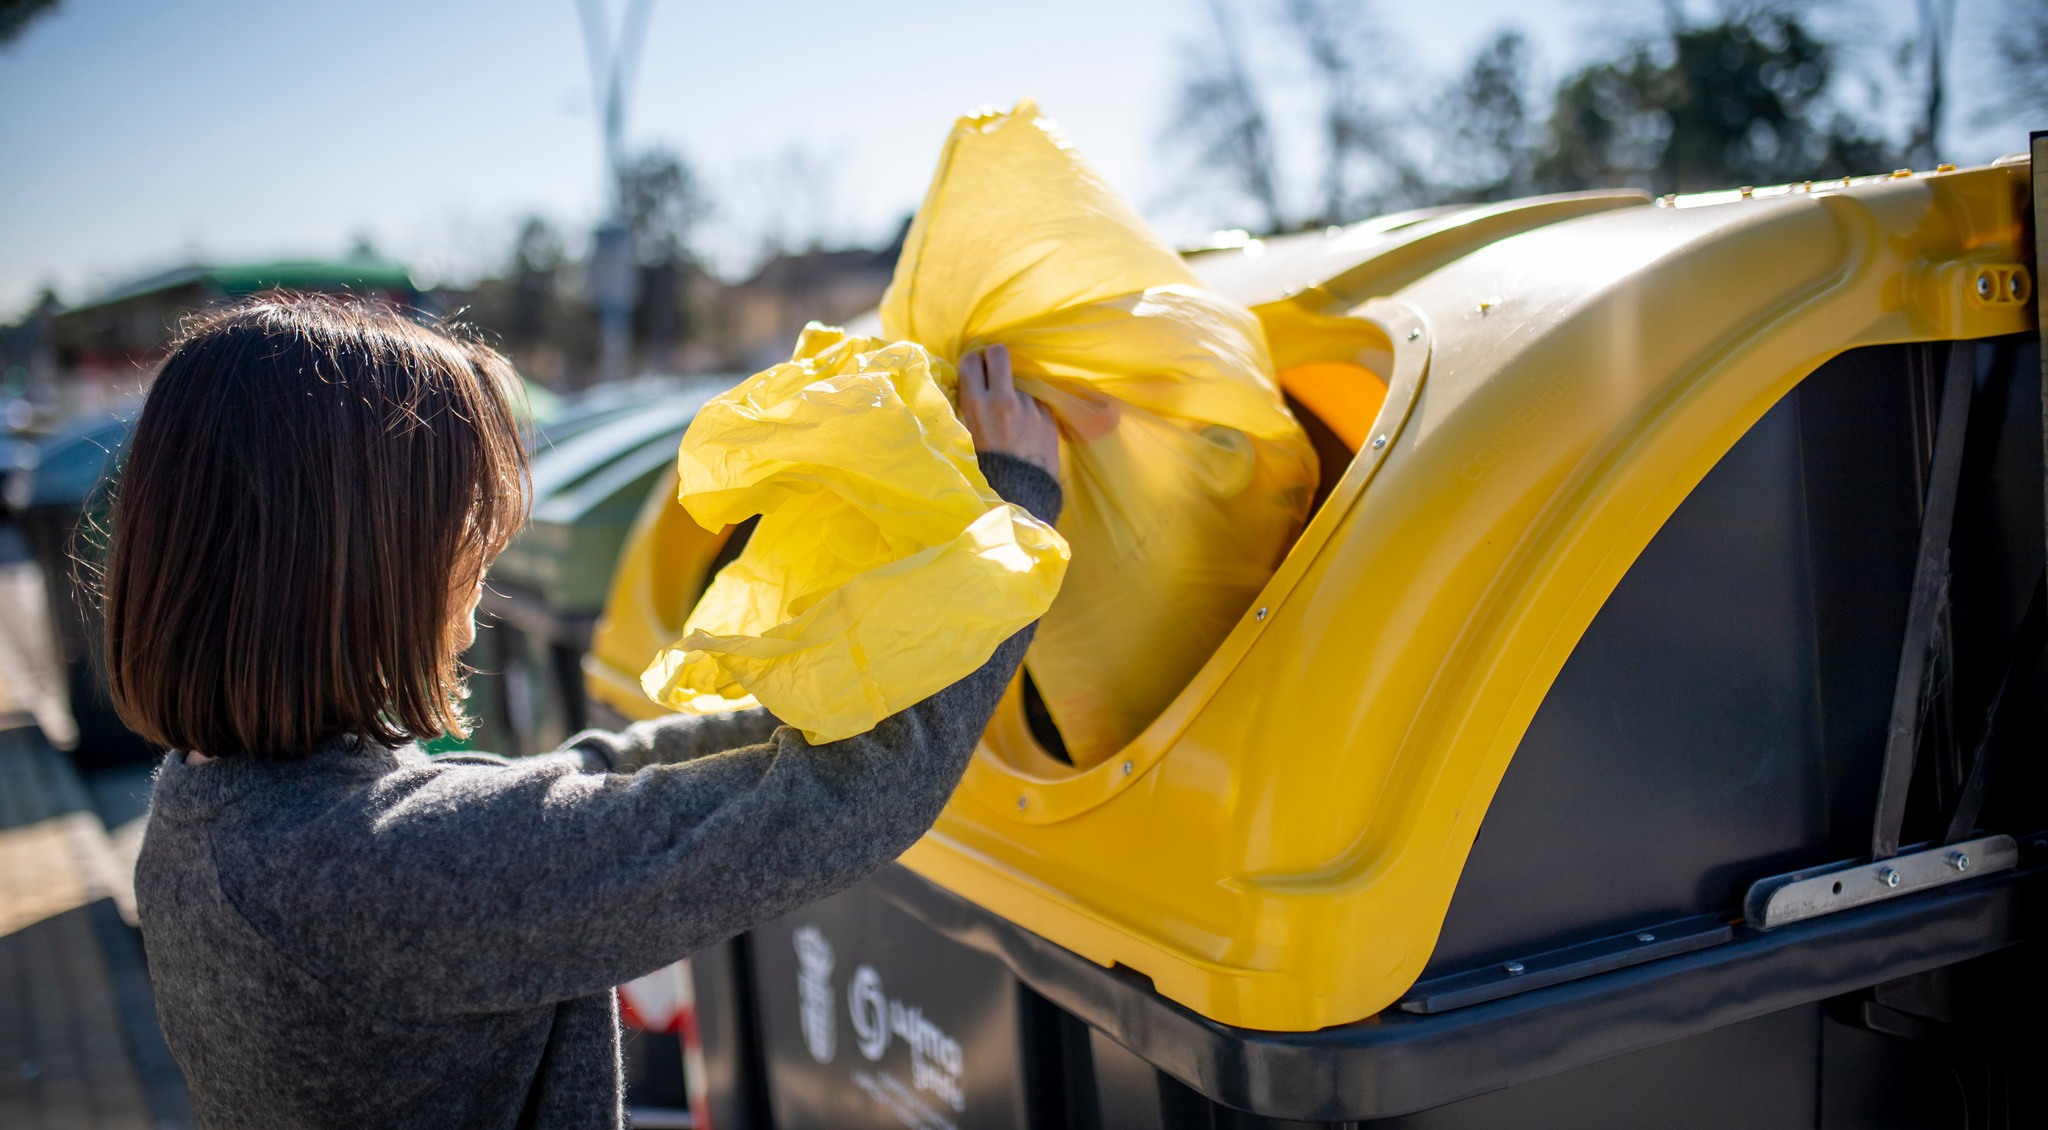 Una ciudadana echa al contenedor algunos residuos reciclables. Foto: CARM